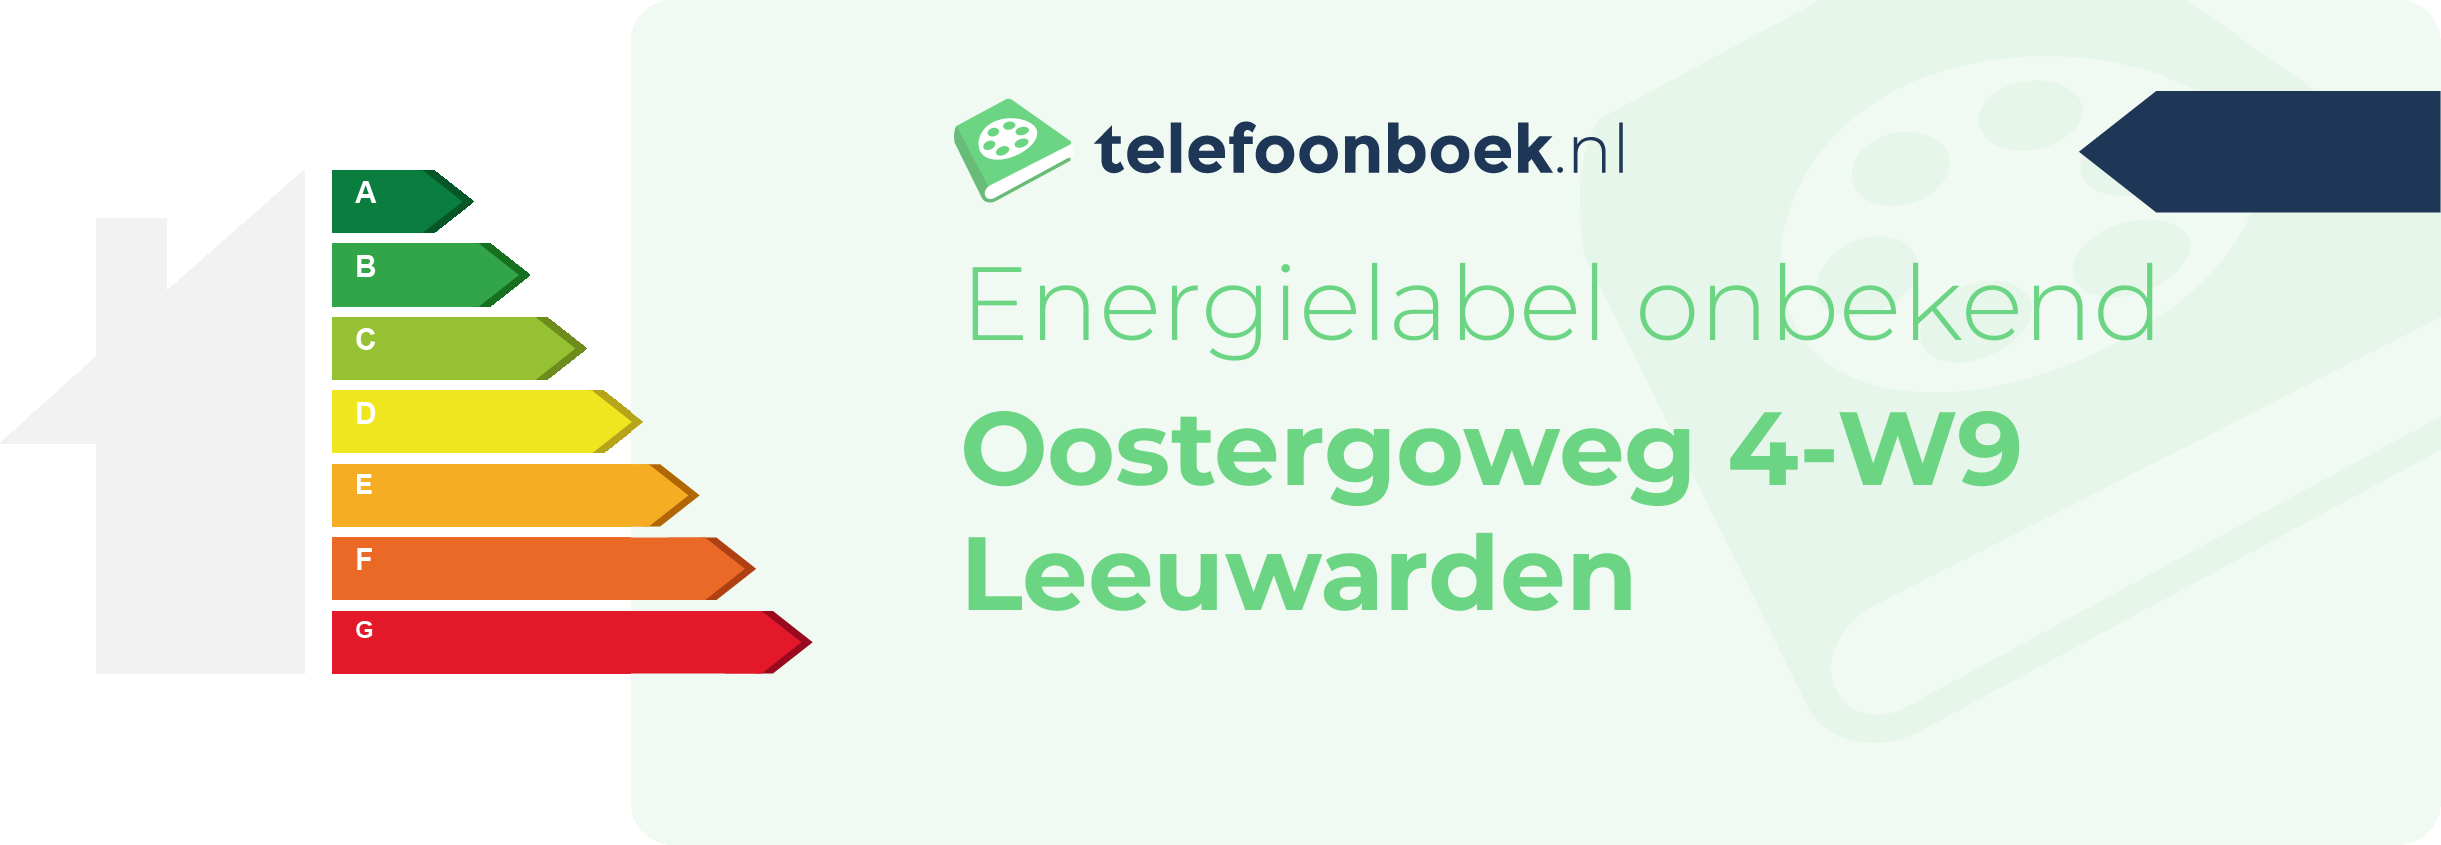 Energielabel Oostergoweg 4-W9 Leeuwarden